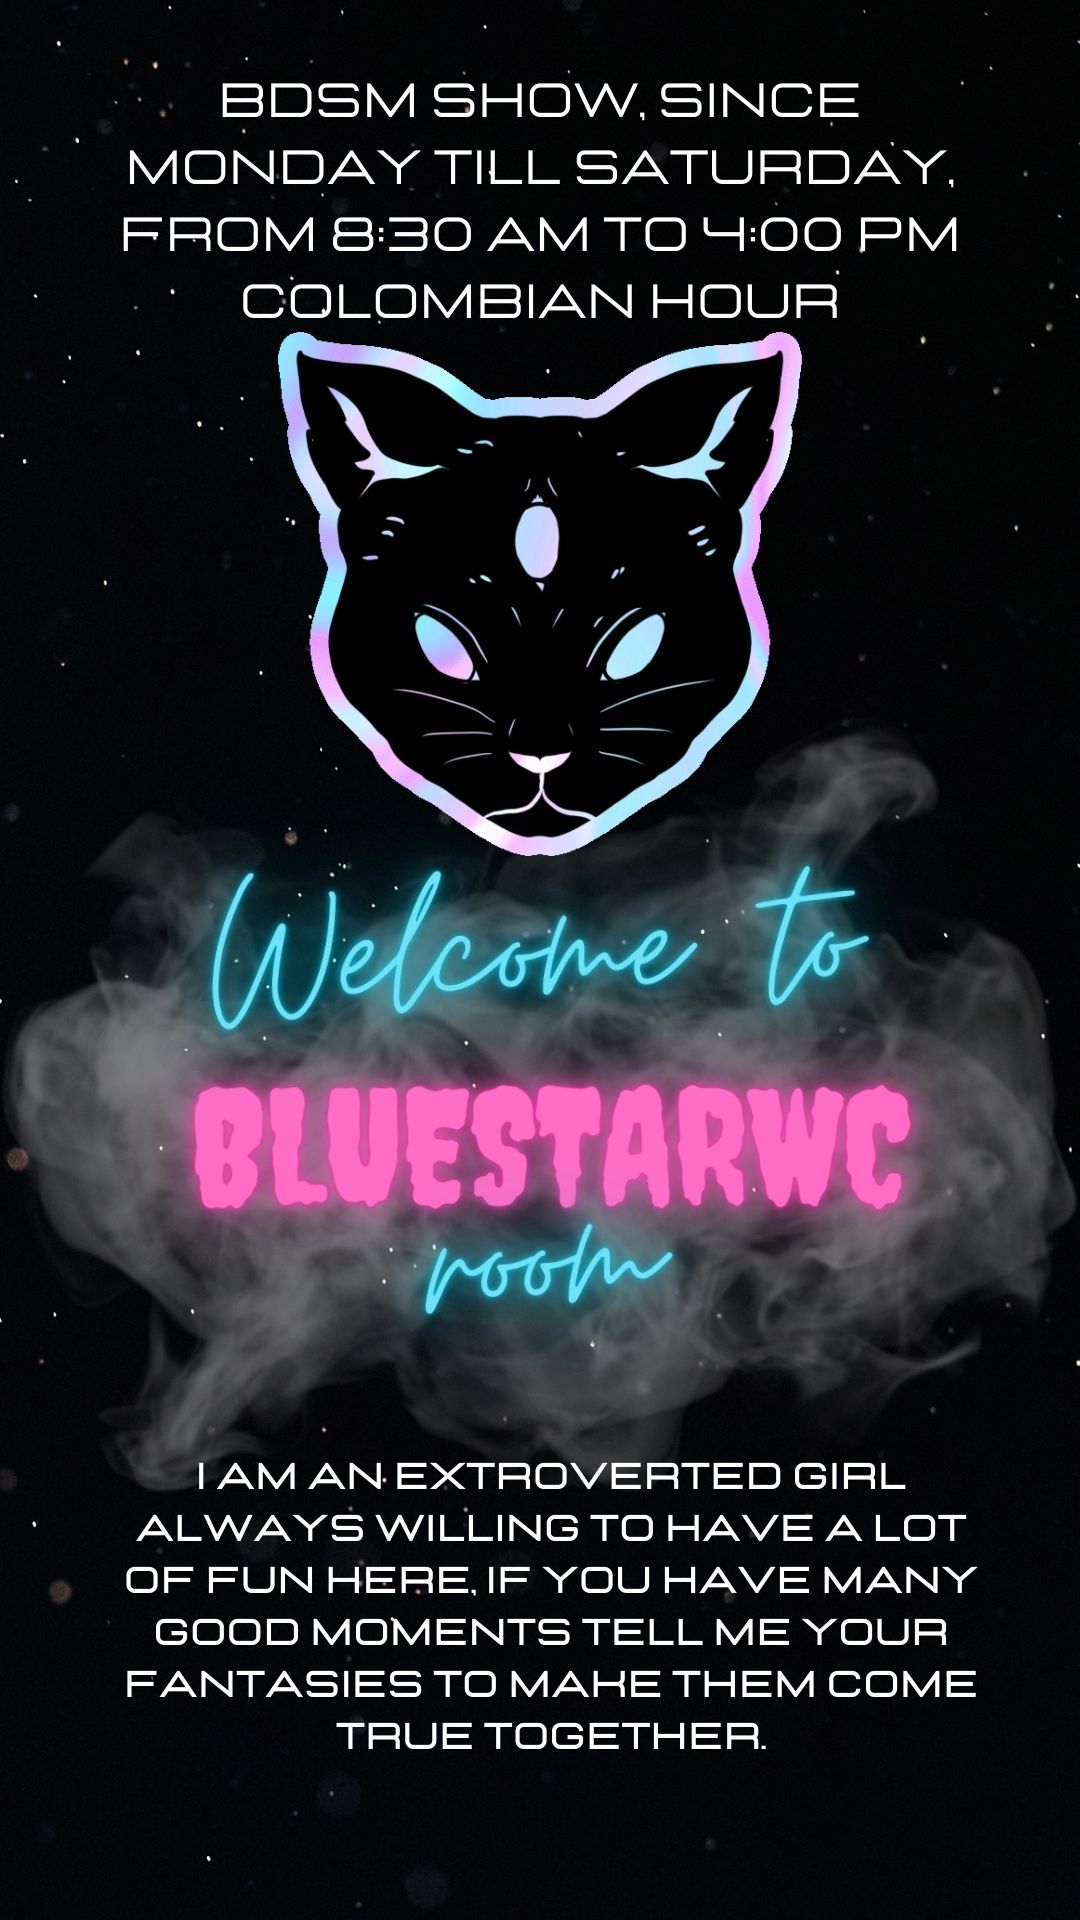 BlueStarWc Welcome here image: 1